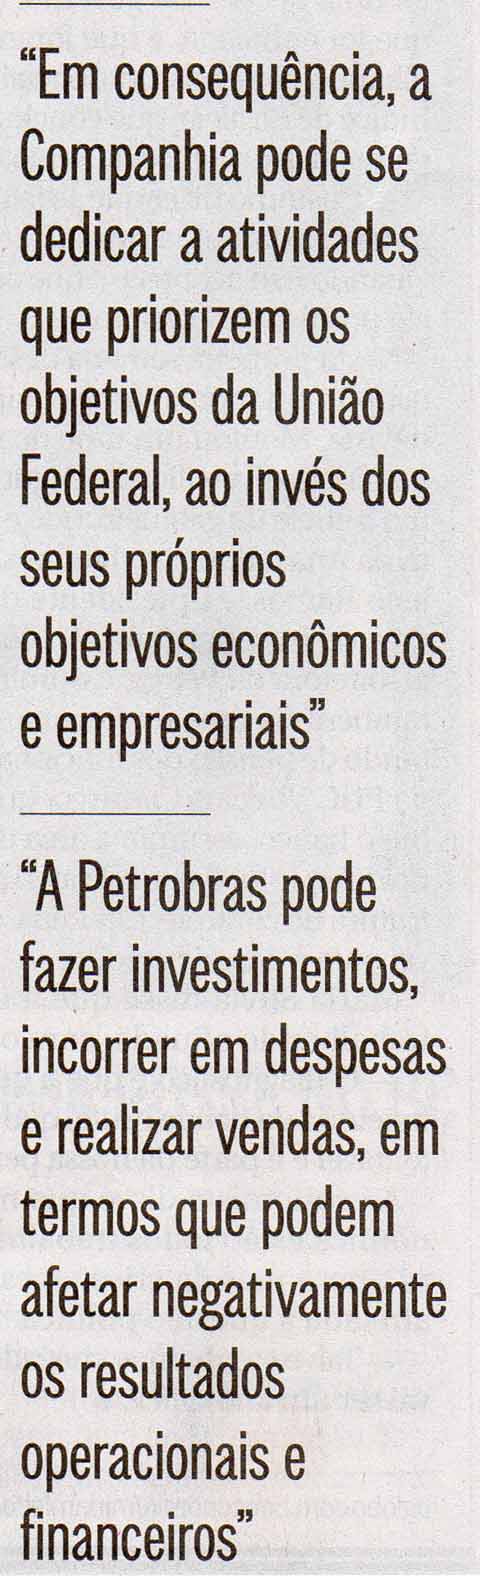 Trechos do relatrio da Petrobras - O Globo 10.06.2016